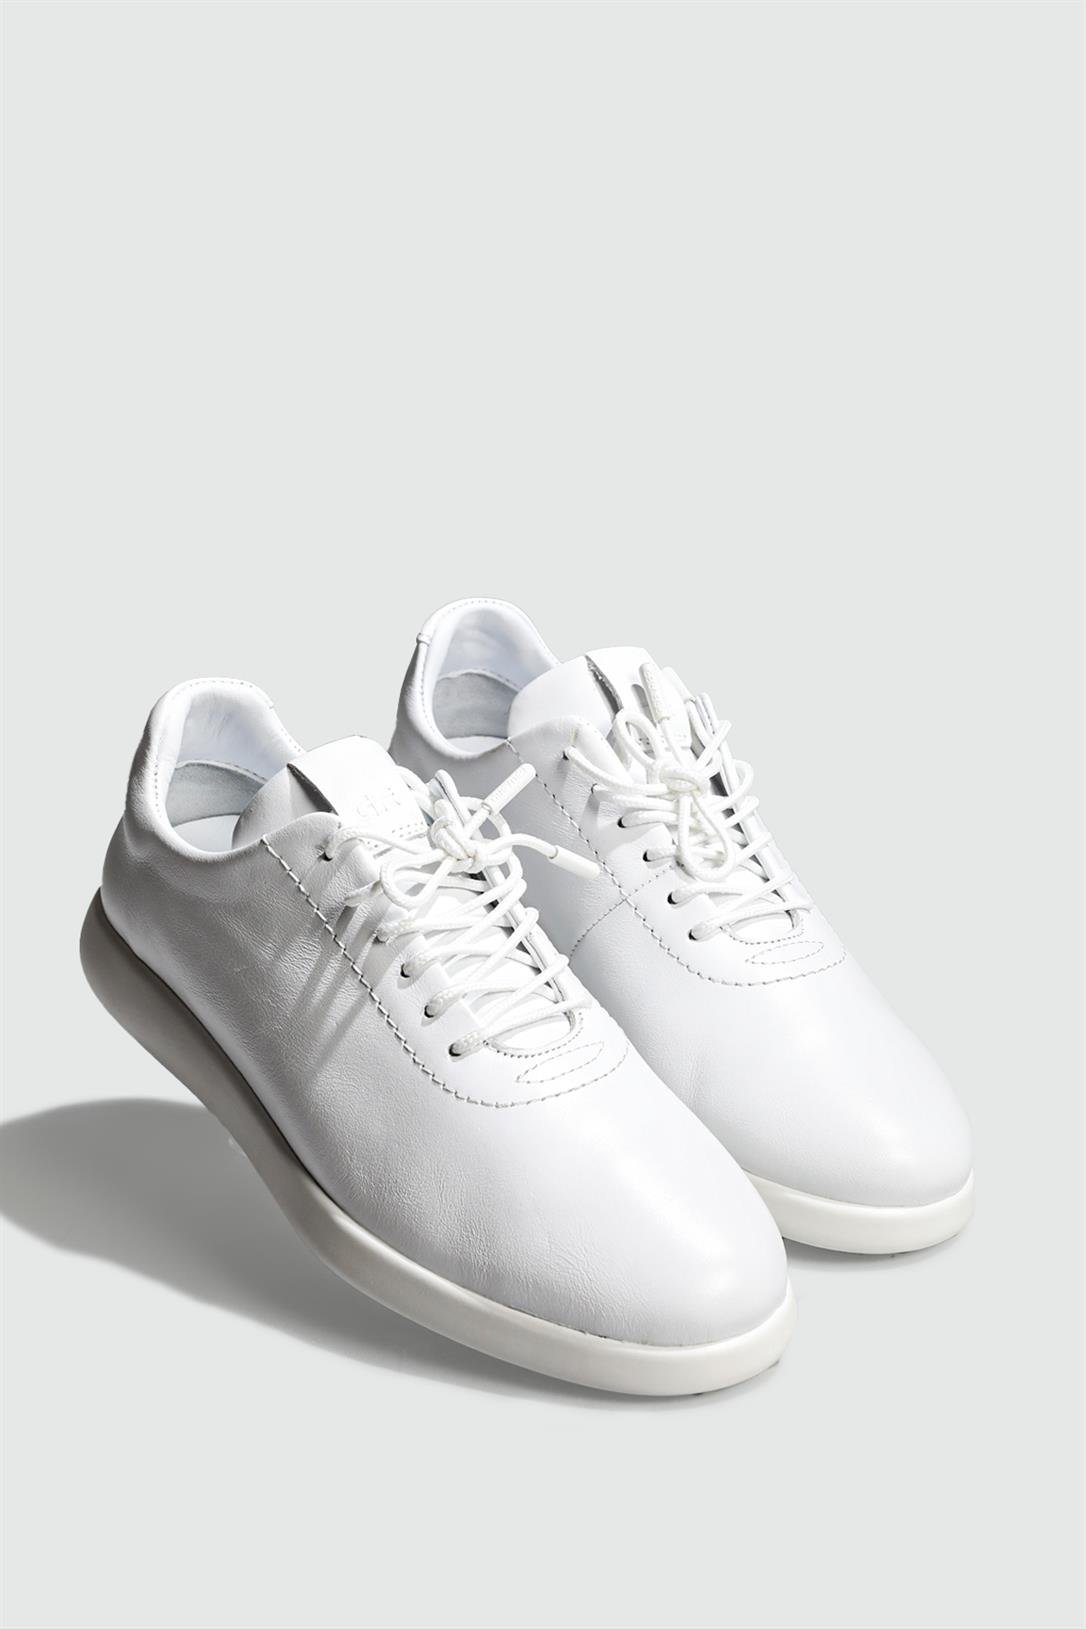 Greyder Günlük Deri Beyaz Kadın Spor Ayakkabı 32250 | Ayakkabı City